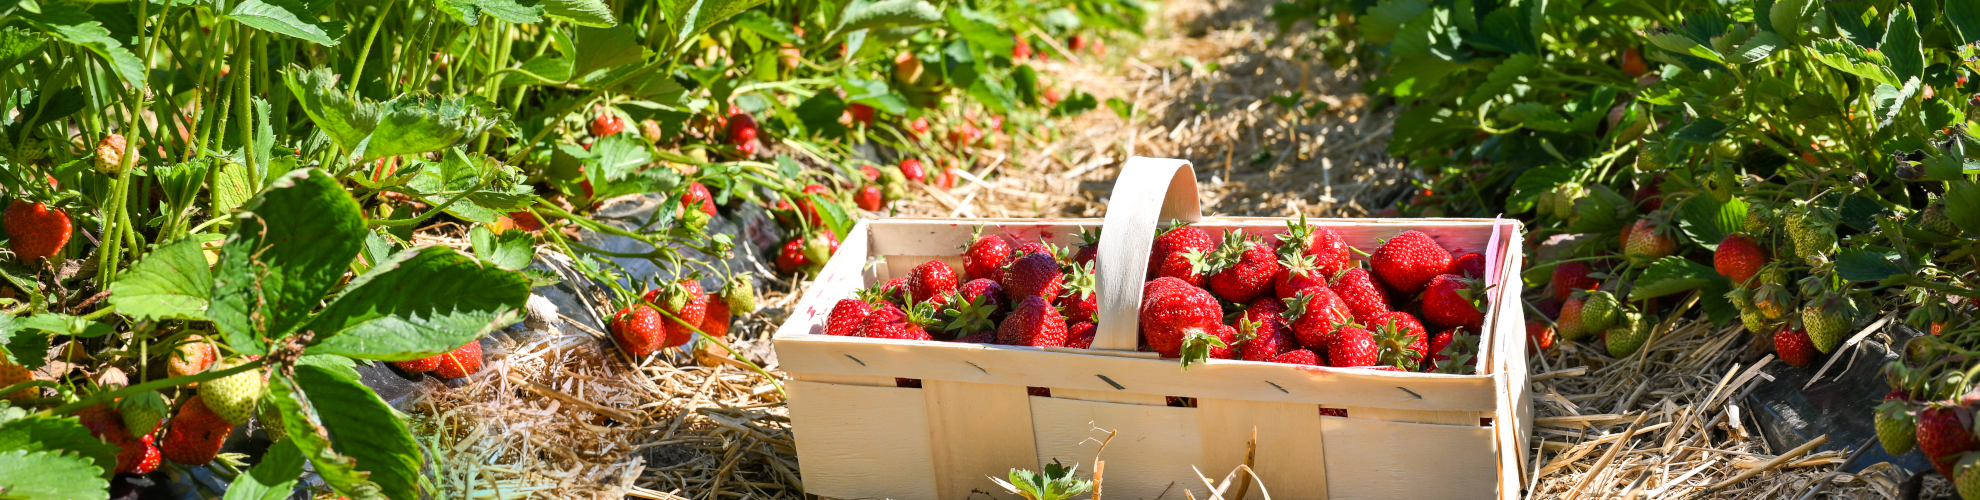 Erdbeerland Hoffelner, vielen Reihen mit satt-grünen Erdbeerpflanzen, roten Früchten und blitzblauem Himmel